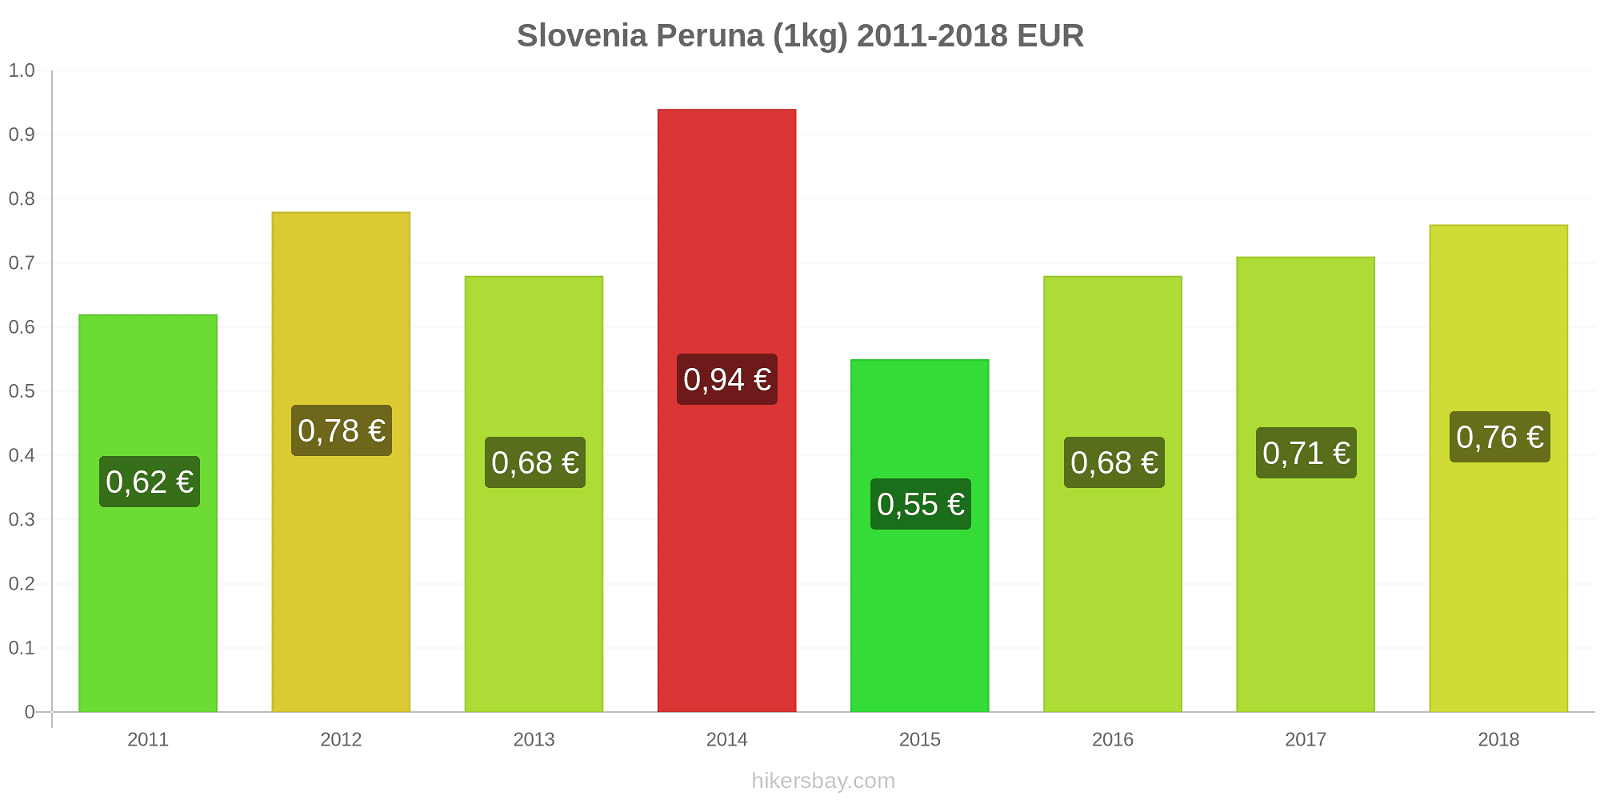 Slovenia hintojen muutokset Peruna (1kg) hikersbay.com